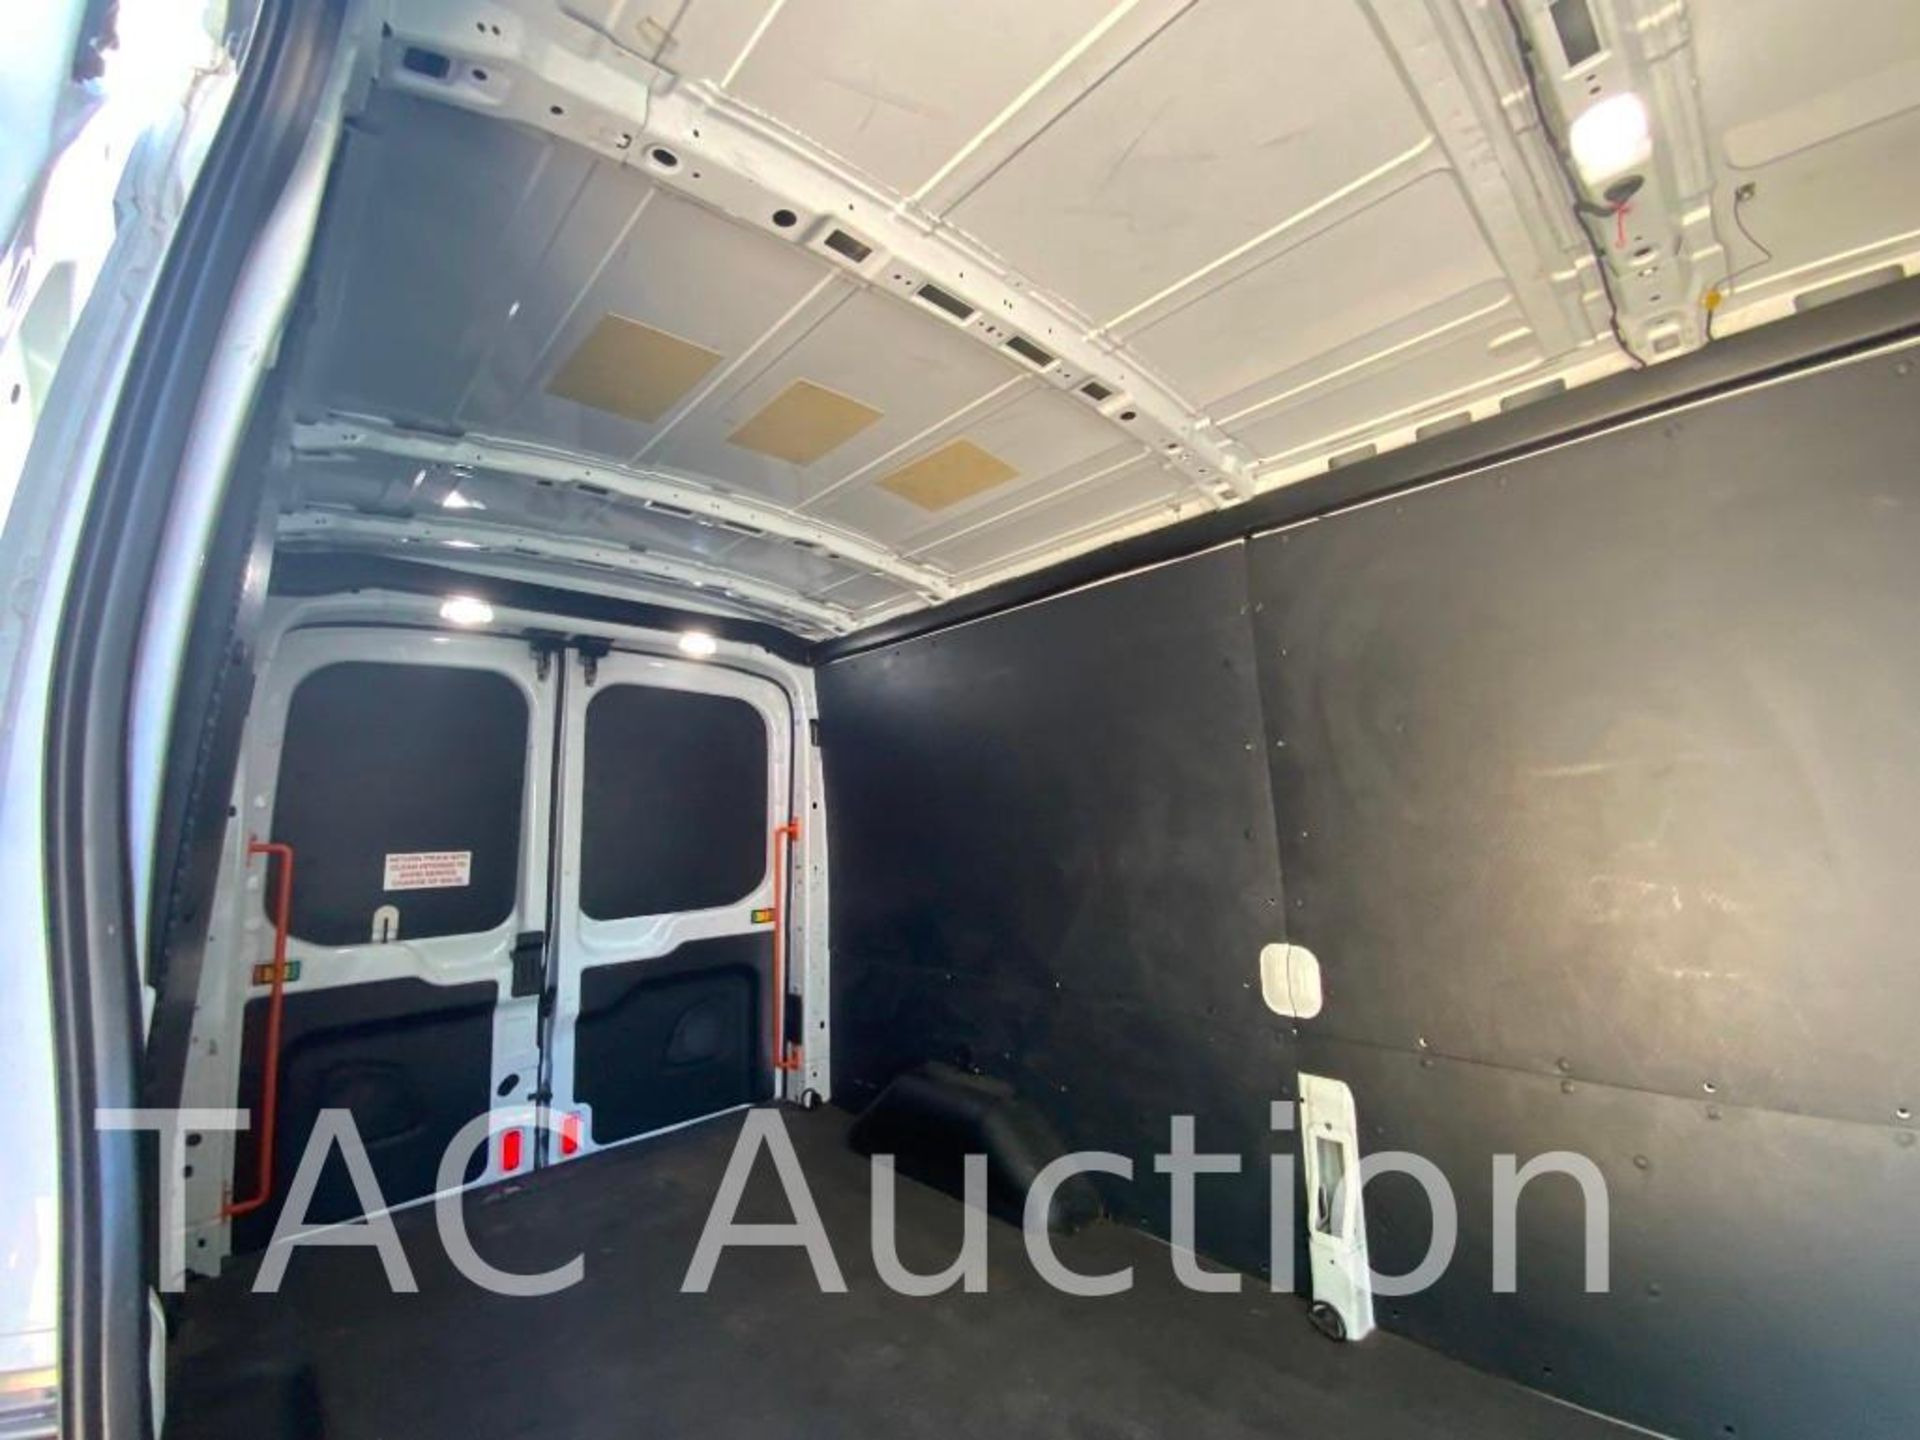 2019 Ford Transit 150 Cargo Van - Image 20 of 48